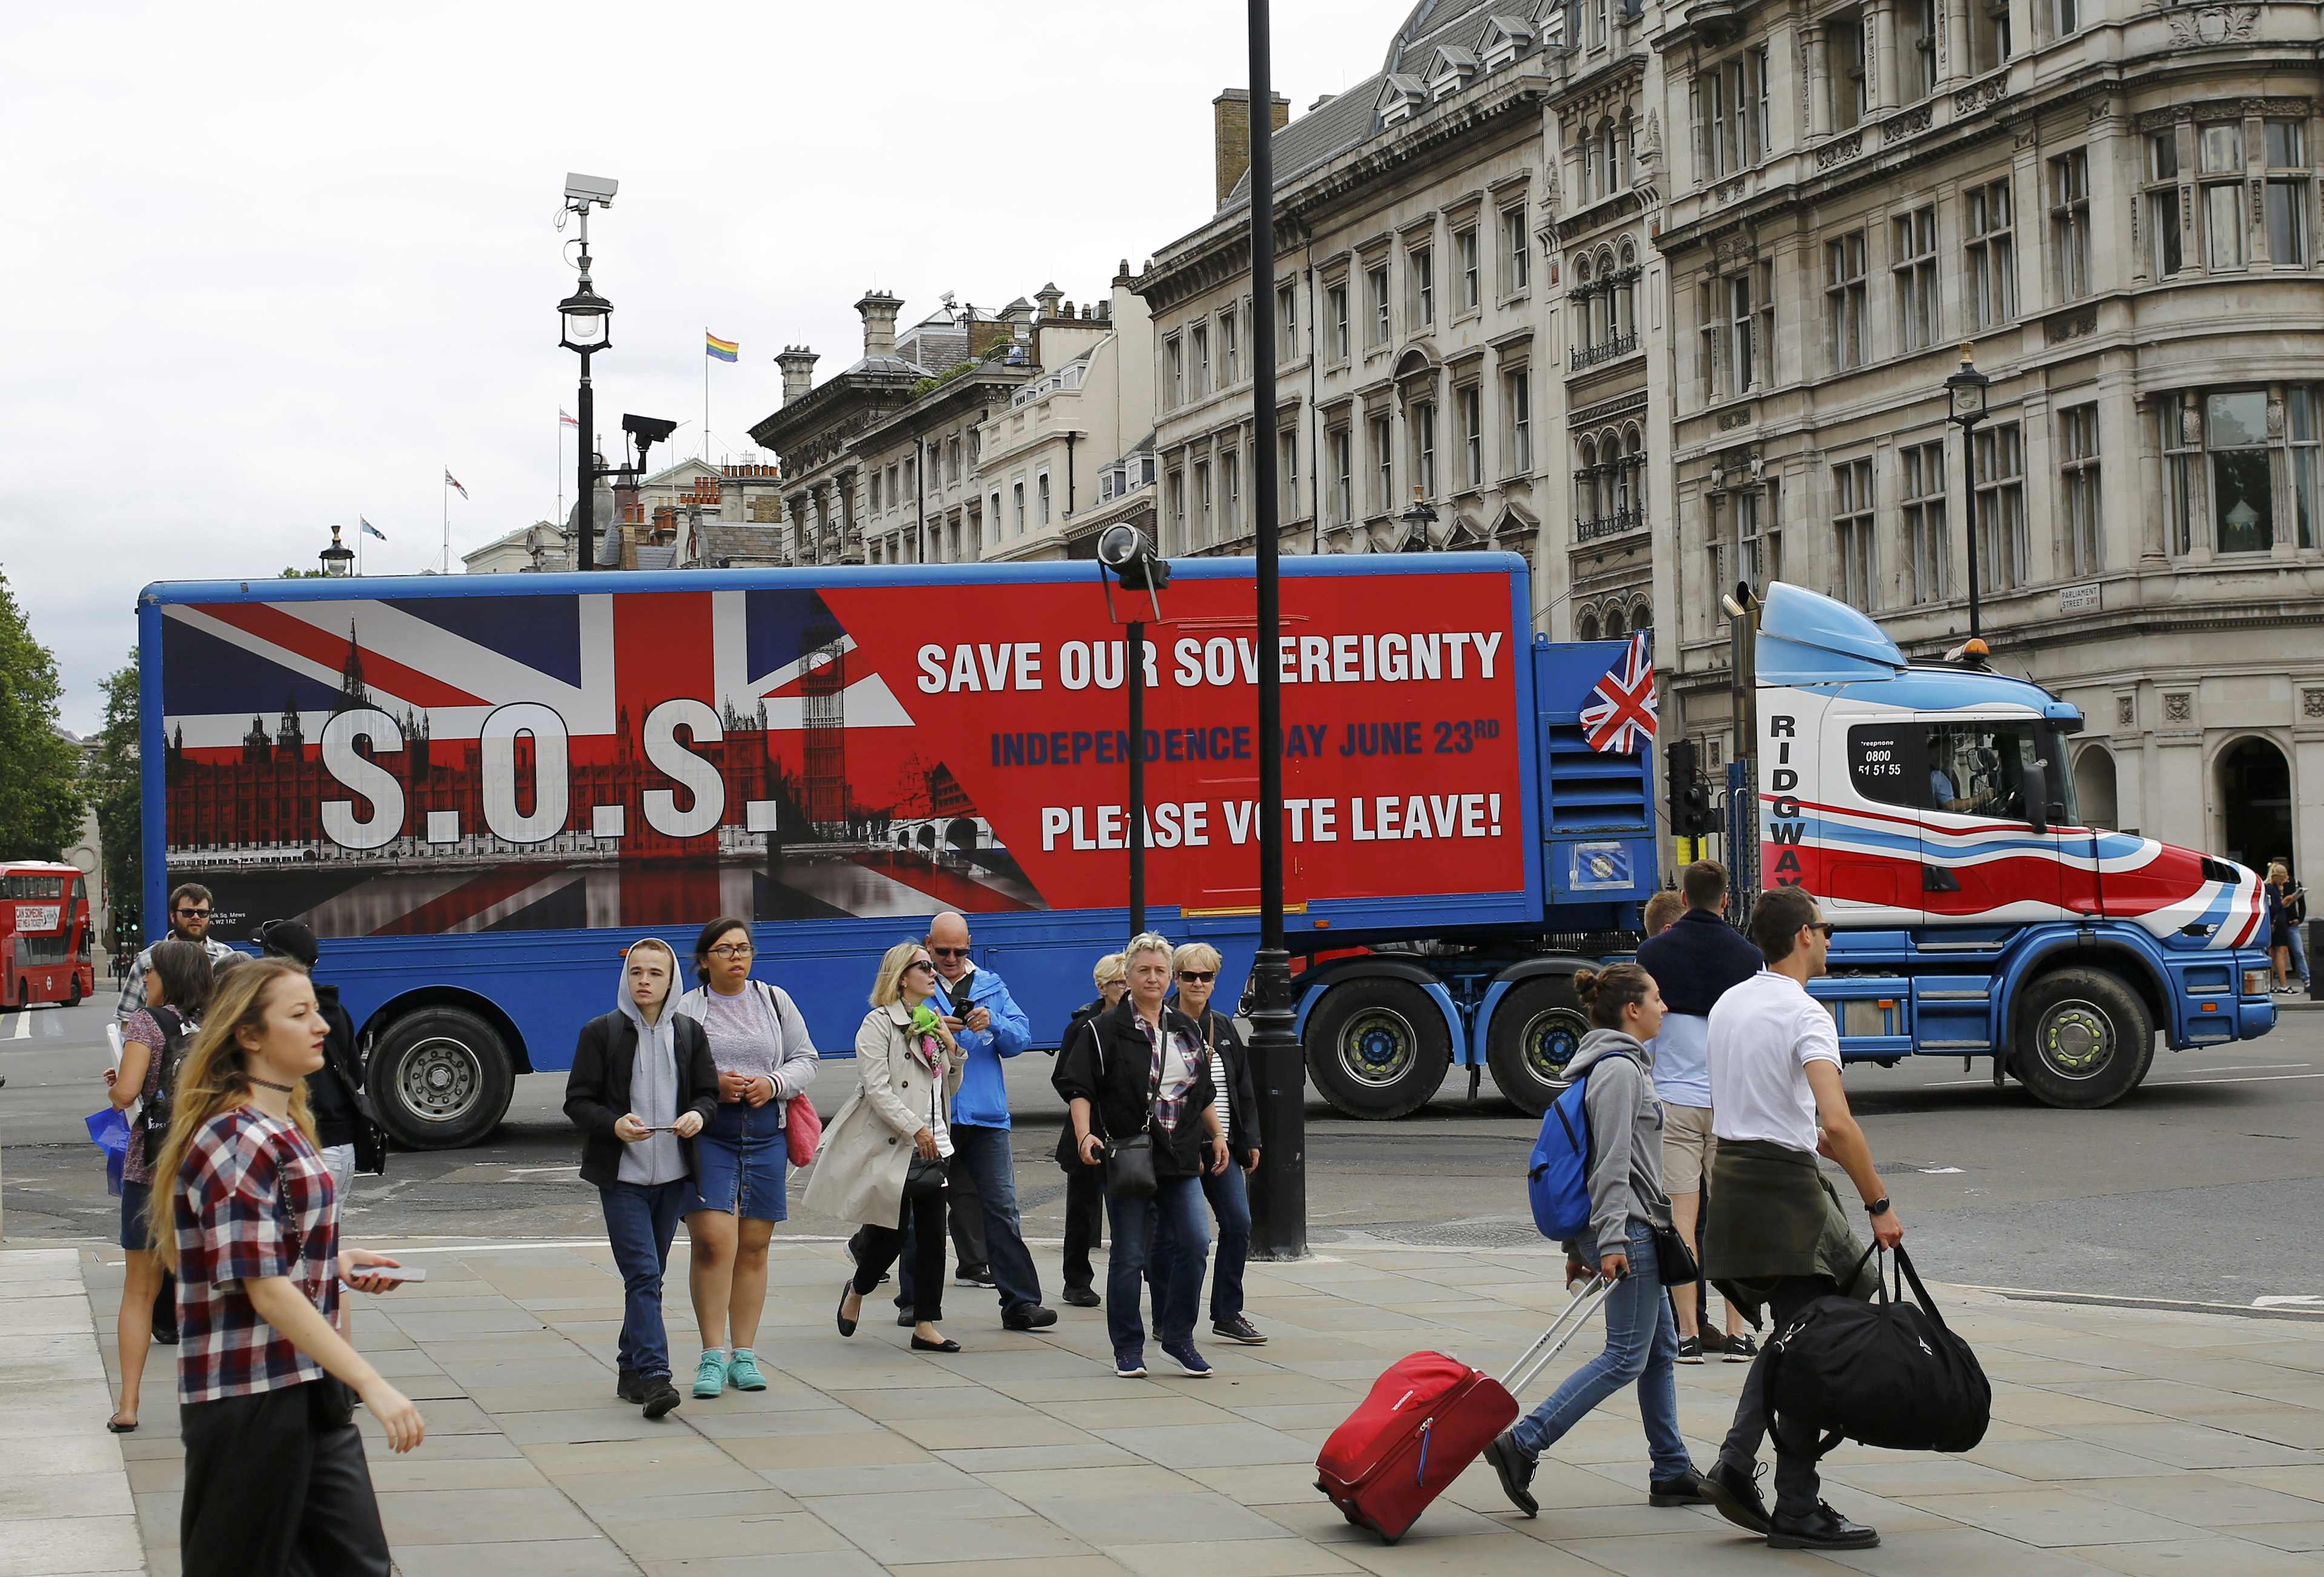 Thậm chí cả xe tải cũng được dùng để làm phương tiện truyền tải thông điệp “đi” hay “ở” của người dân Anh (Ảnh: Reuters)